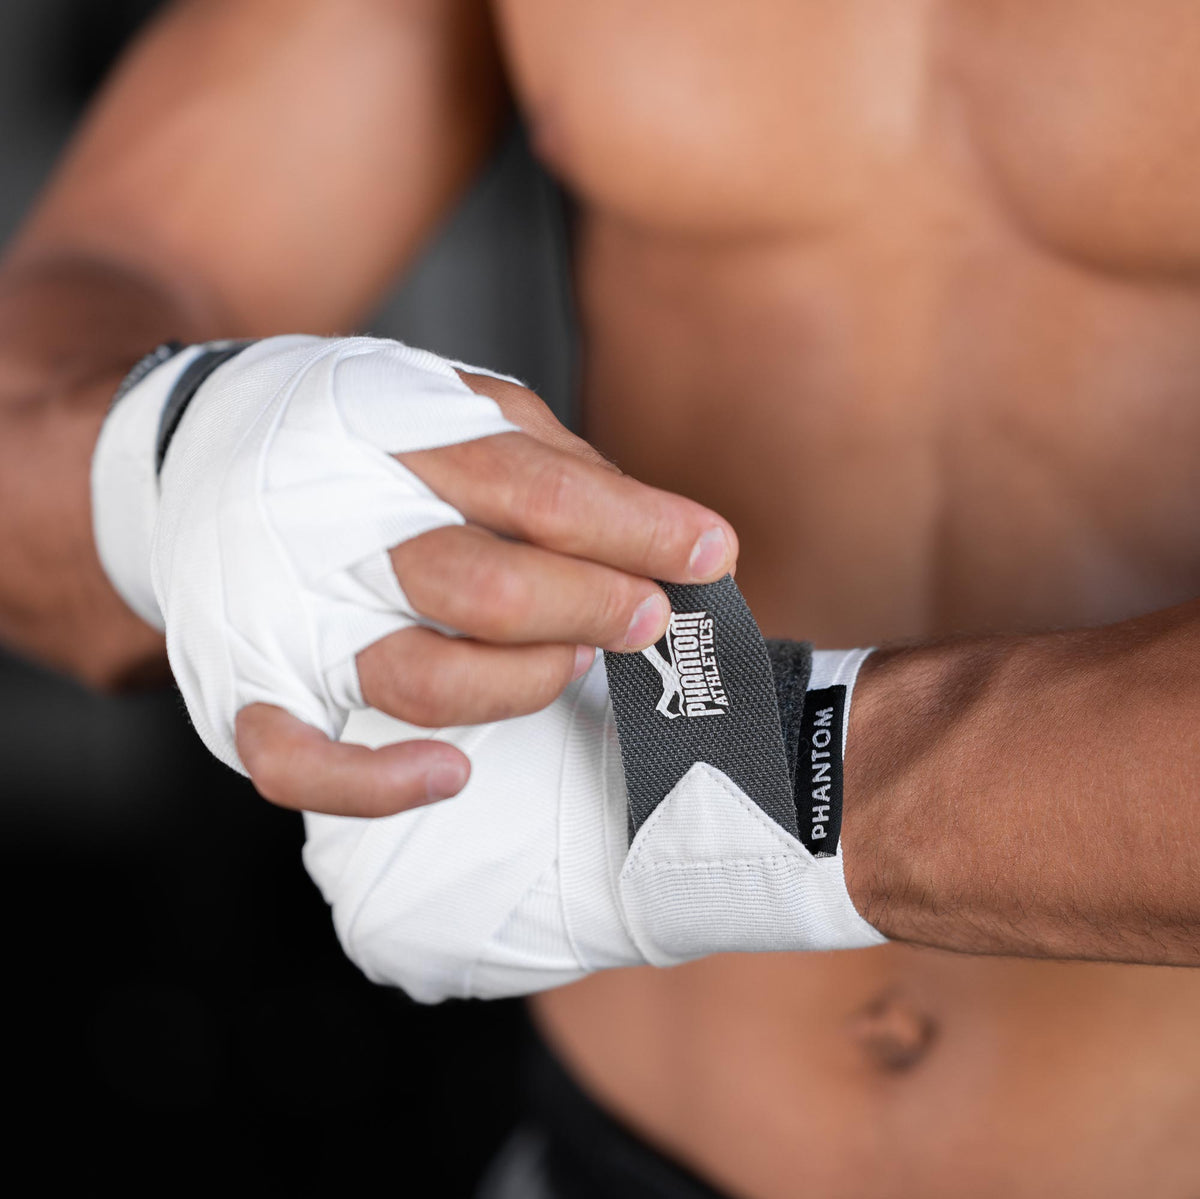 Die Phantom Impact Boxbandagen für dein Kampfsporttraining. 2 Sets Bandagen in 250 oder 400cm Länge. Ideal für MMA, Muay Thai oder Kickboxen. Aus halbelastischem Material mit hochwertigem Logo und Klettverschluss.